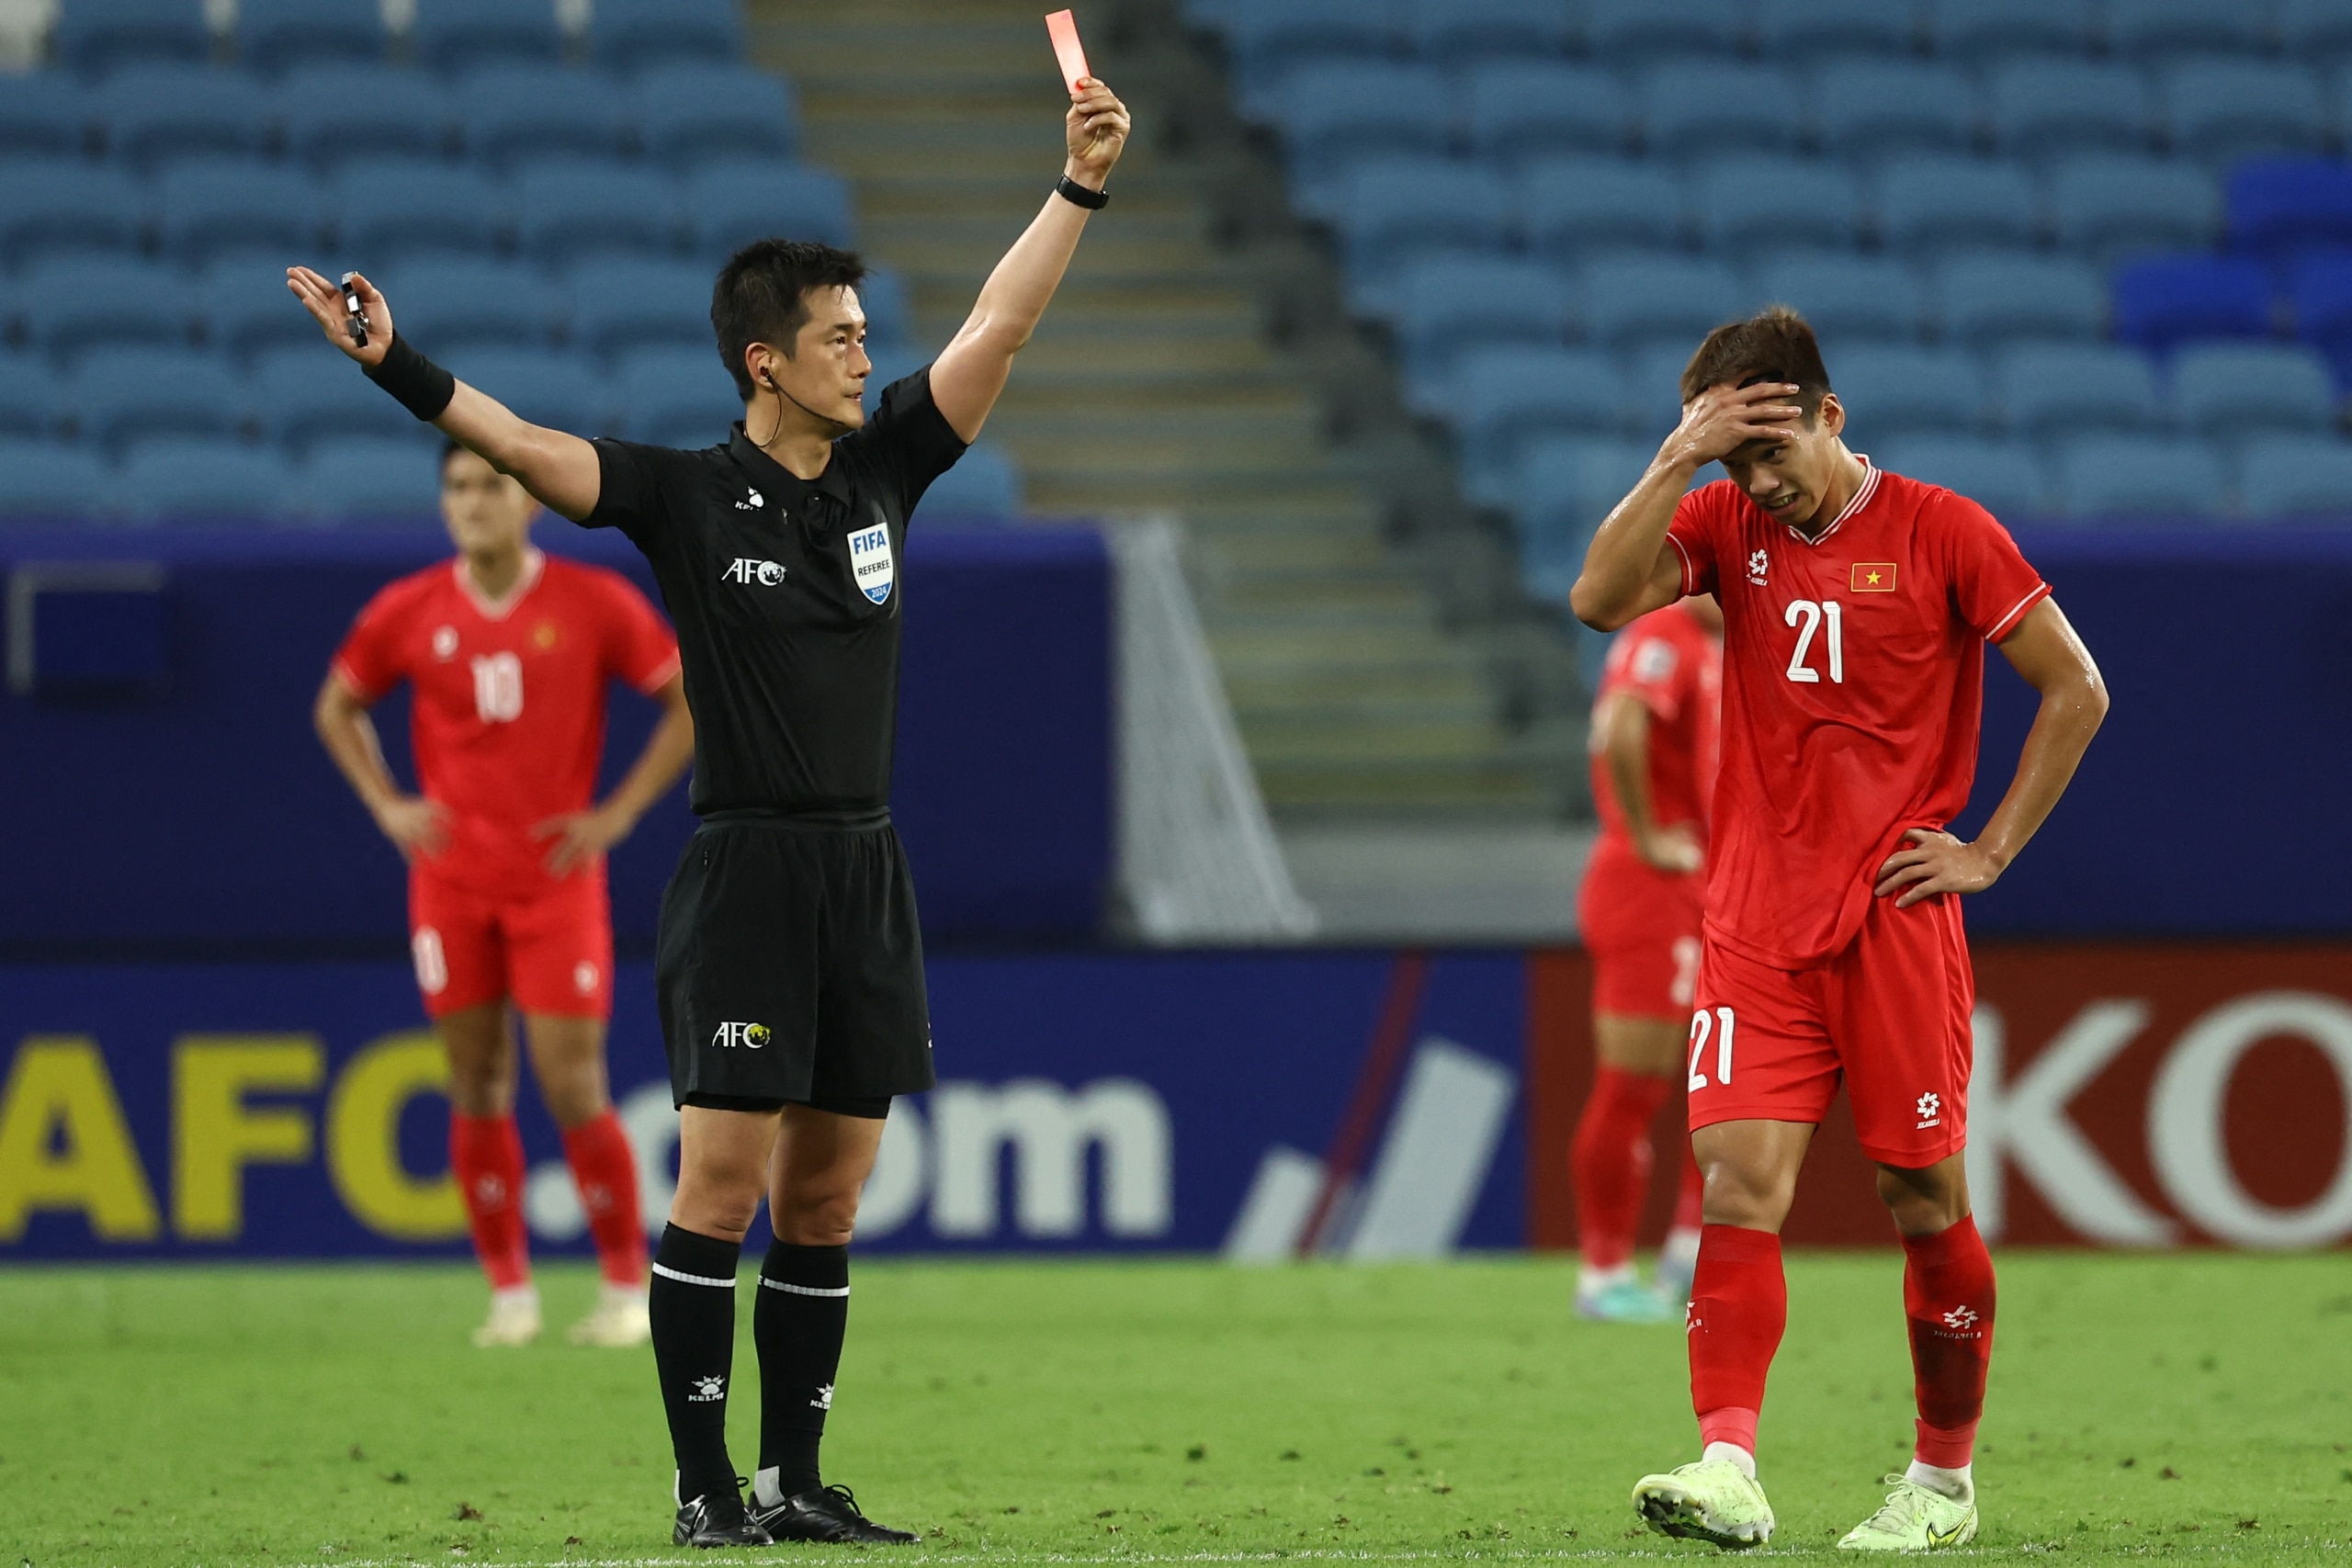 Hoang Anh Tuan 감독: '베트남 U.23 선수들이 너무 적게 플레이해 매우 걱정됩니다' - 사진 2